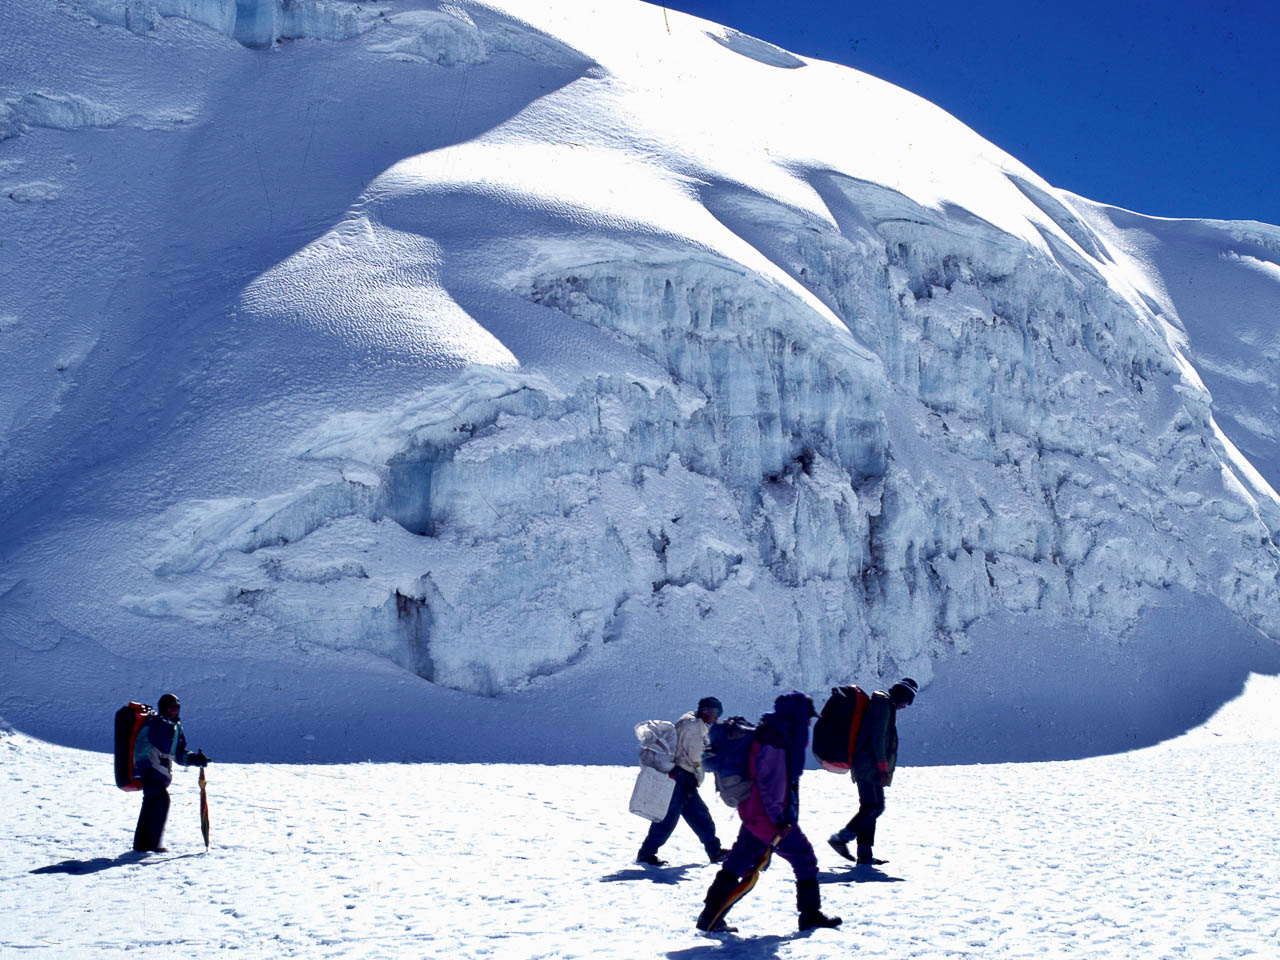 Beklimming Kilimanjaro Tanzania. Mensen met dikke kleding op weg naar de top. Ze lopen door de sneeuw  en zijn bijna bij de top